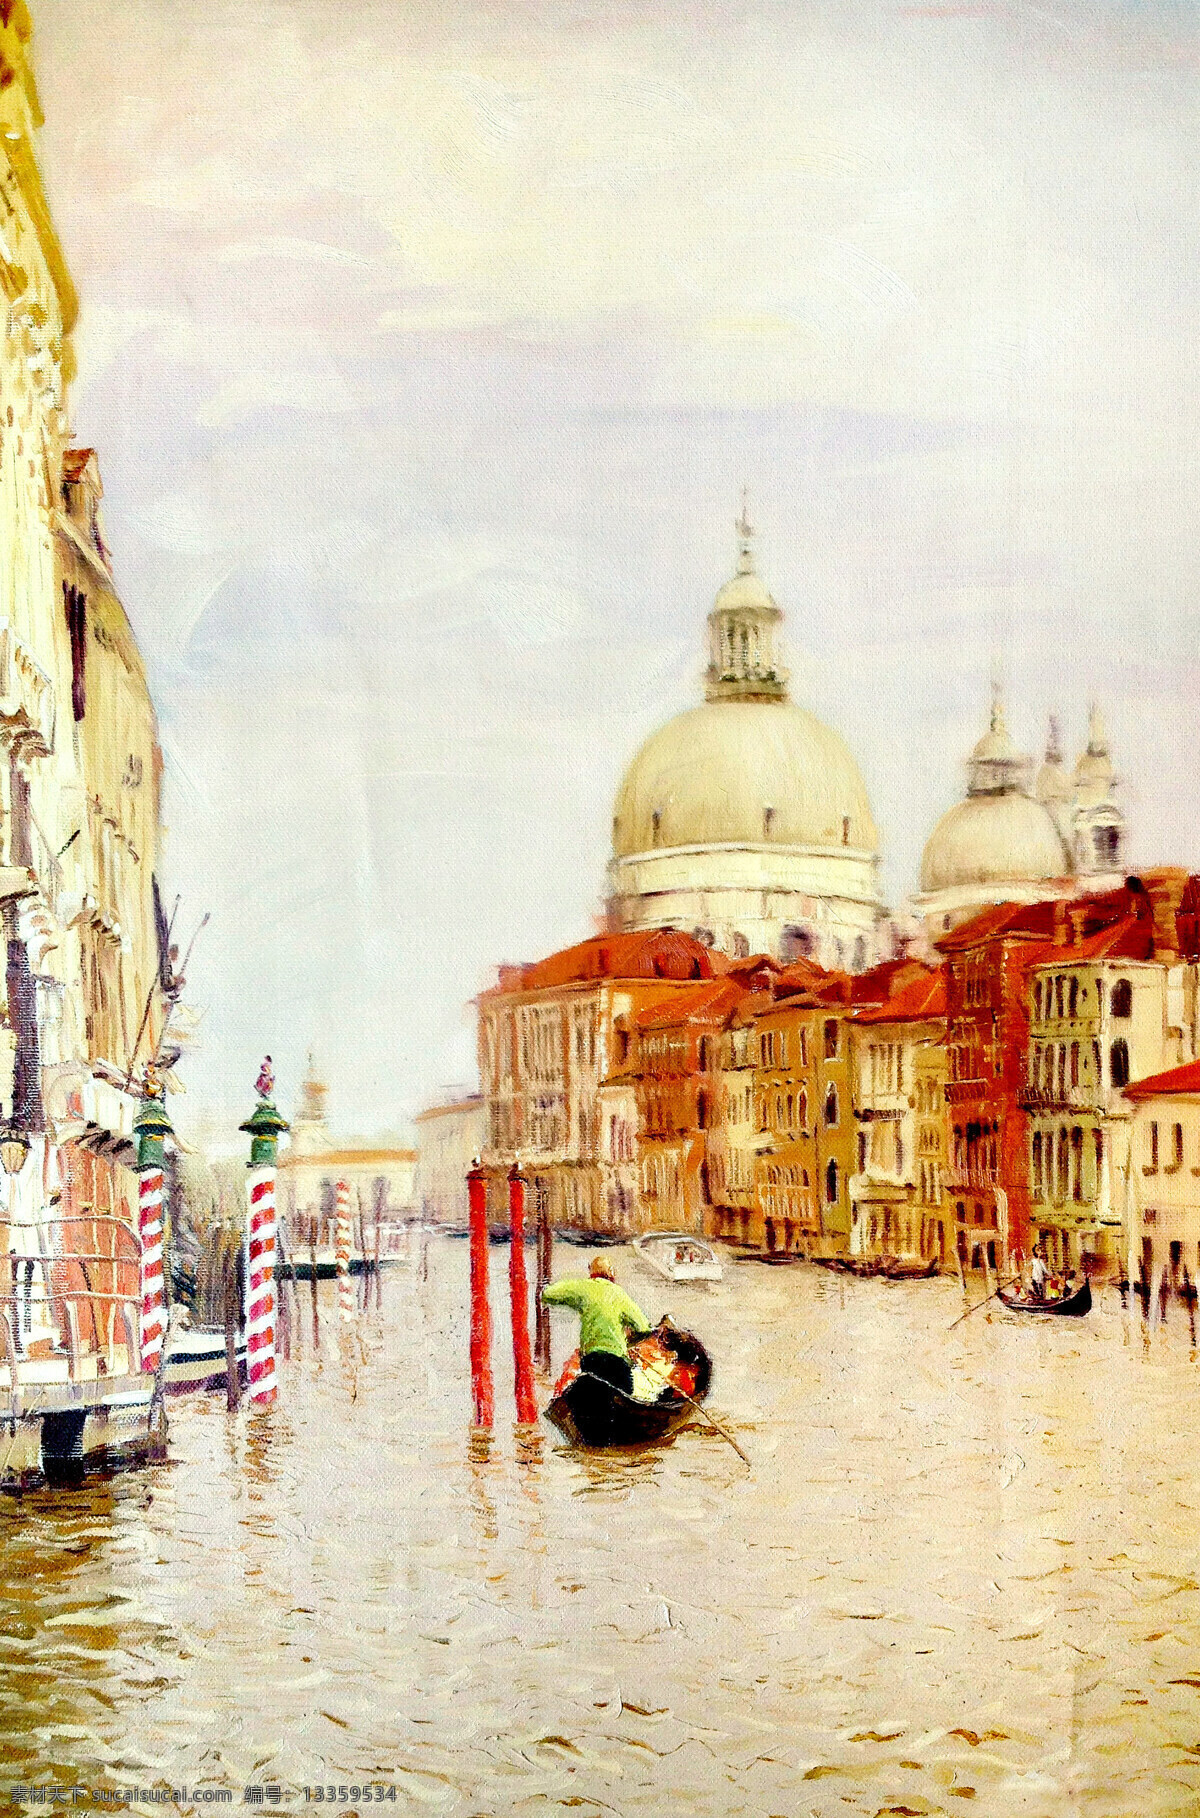 水城 威尼斯 风景 油画 装饰画 绘画艺术 风景写生 风景油画 威尼斯风景 书画文字 文化艺术